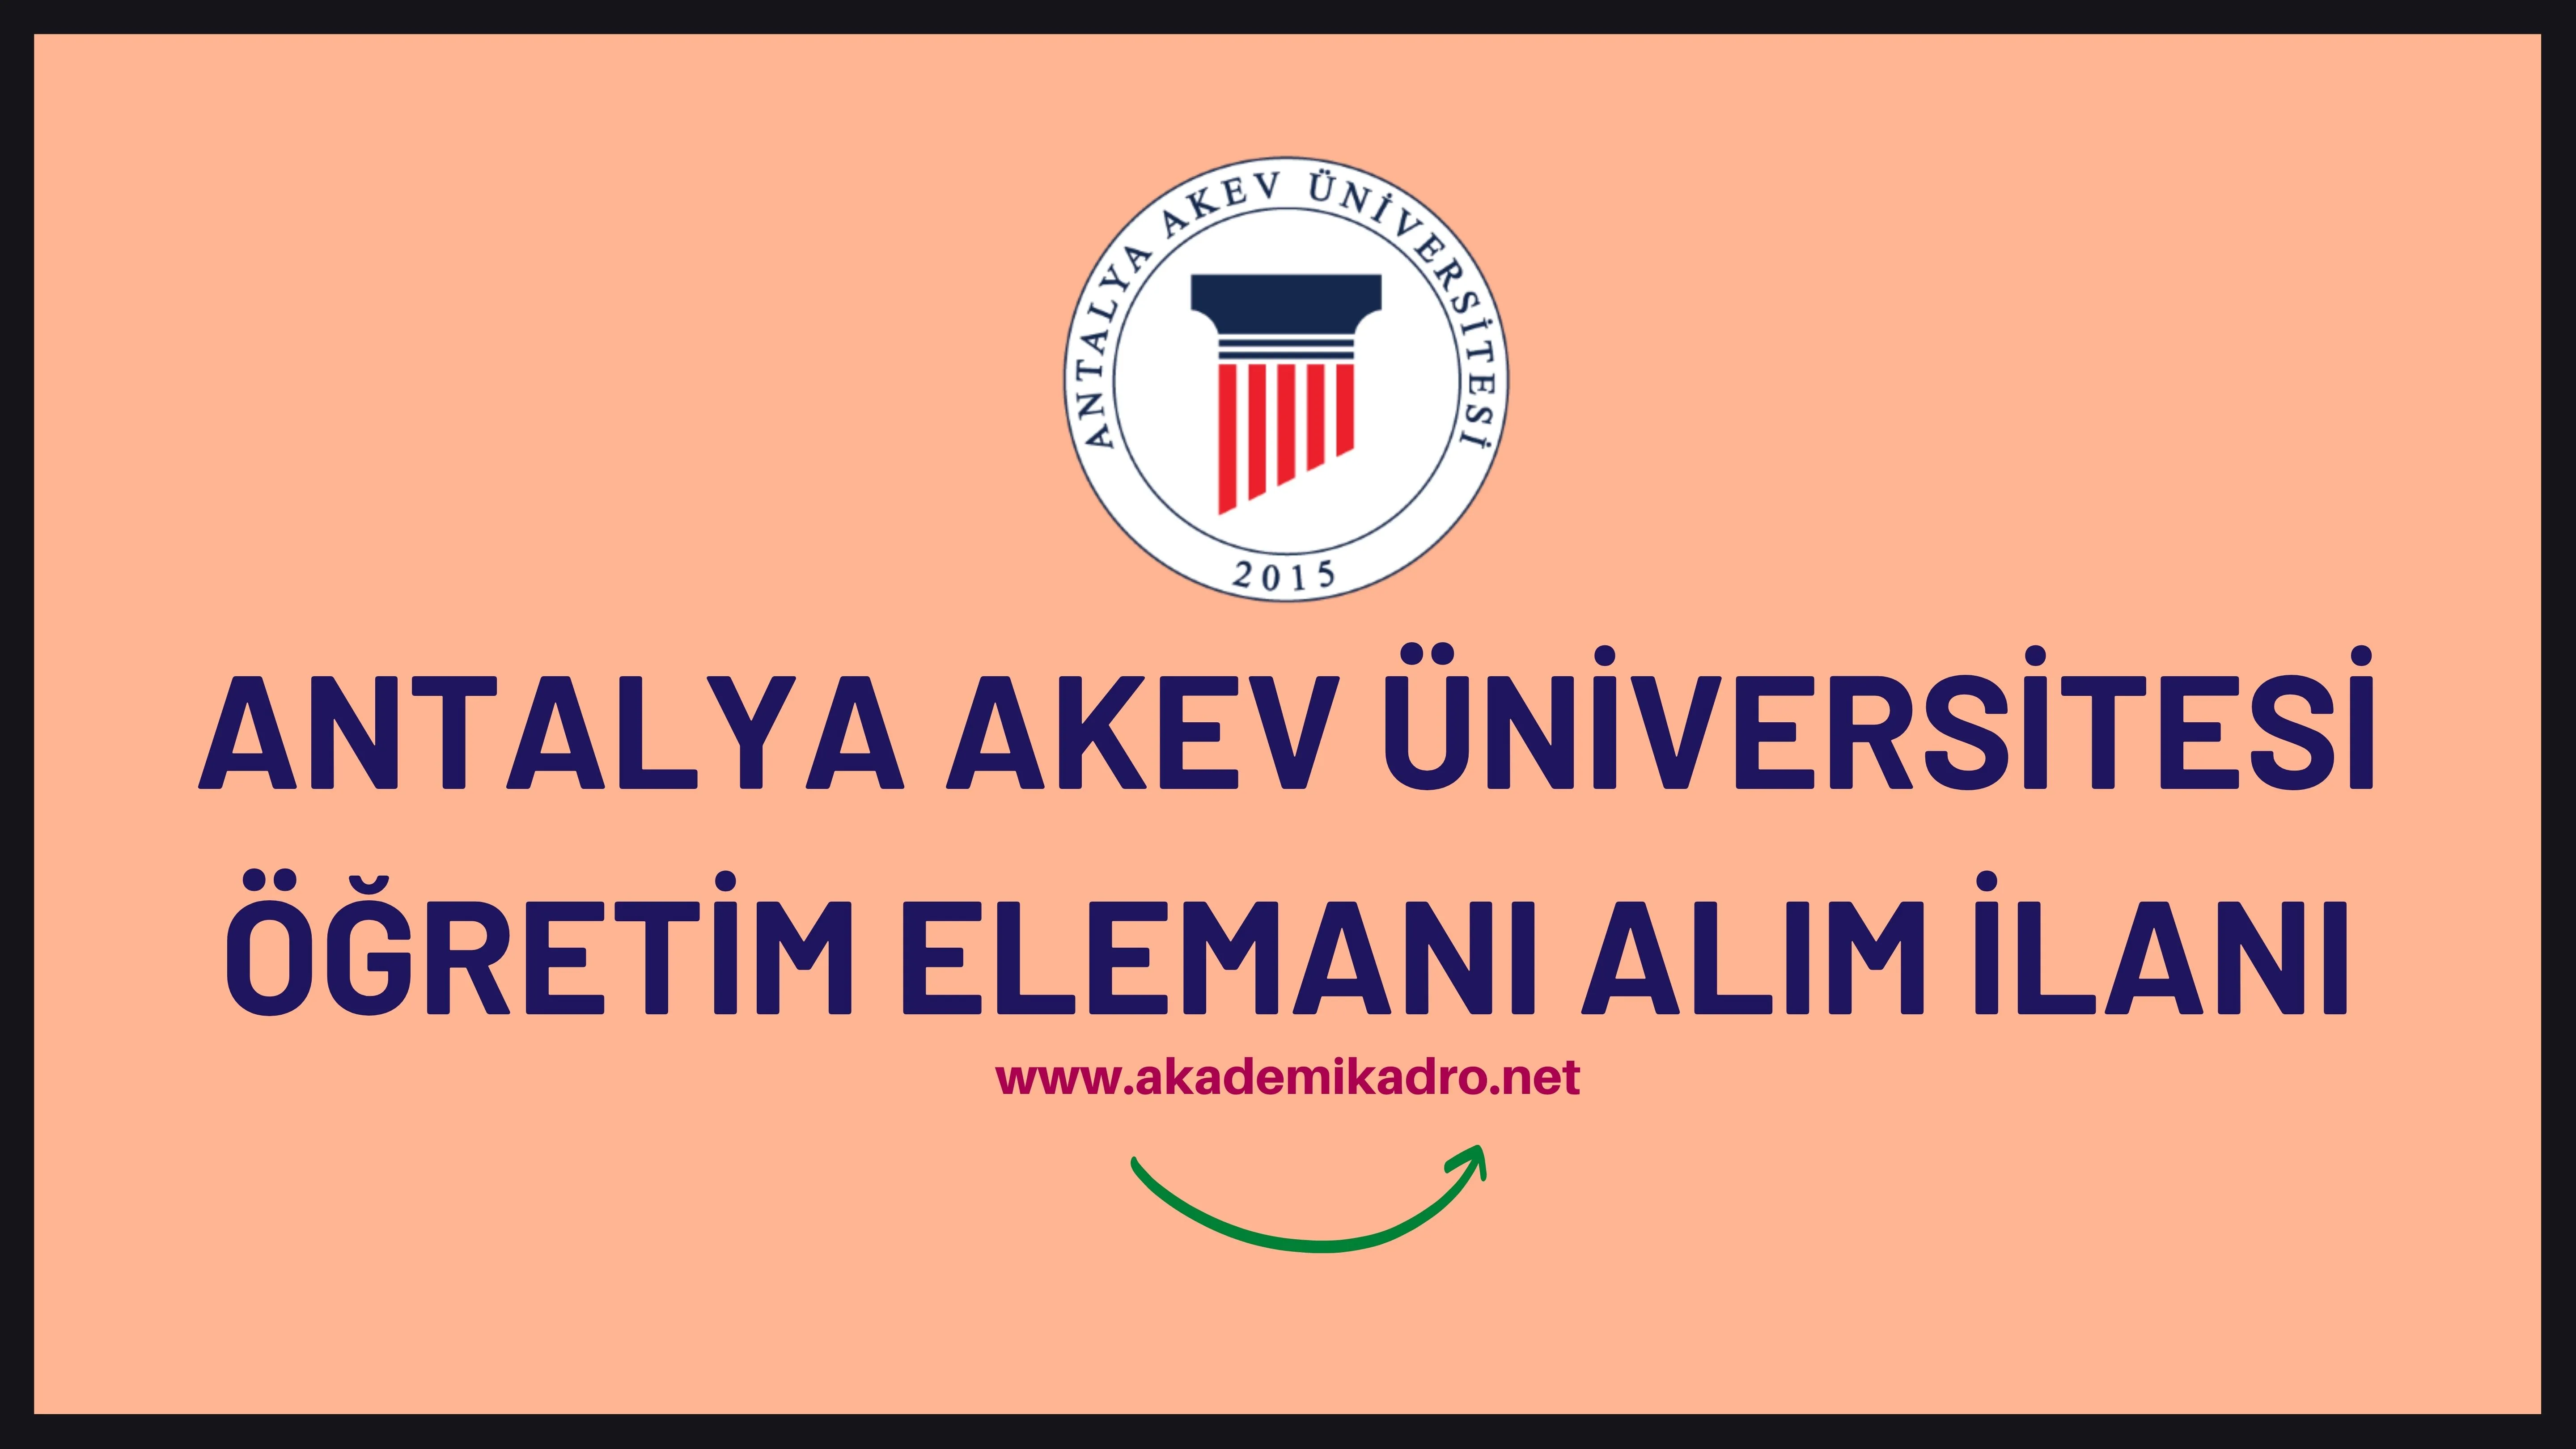 Antalya Akev Üniversitesi 9 Öğretim Görevlisi, 2 Araştırma görevlisi ve 12 Öğretim üyesi alacaktır. Son başvuru tarihi 10 Ekim 2022